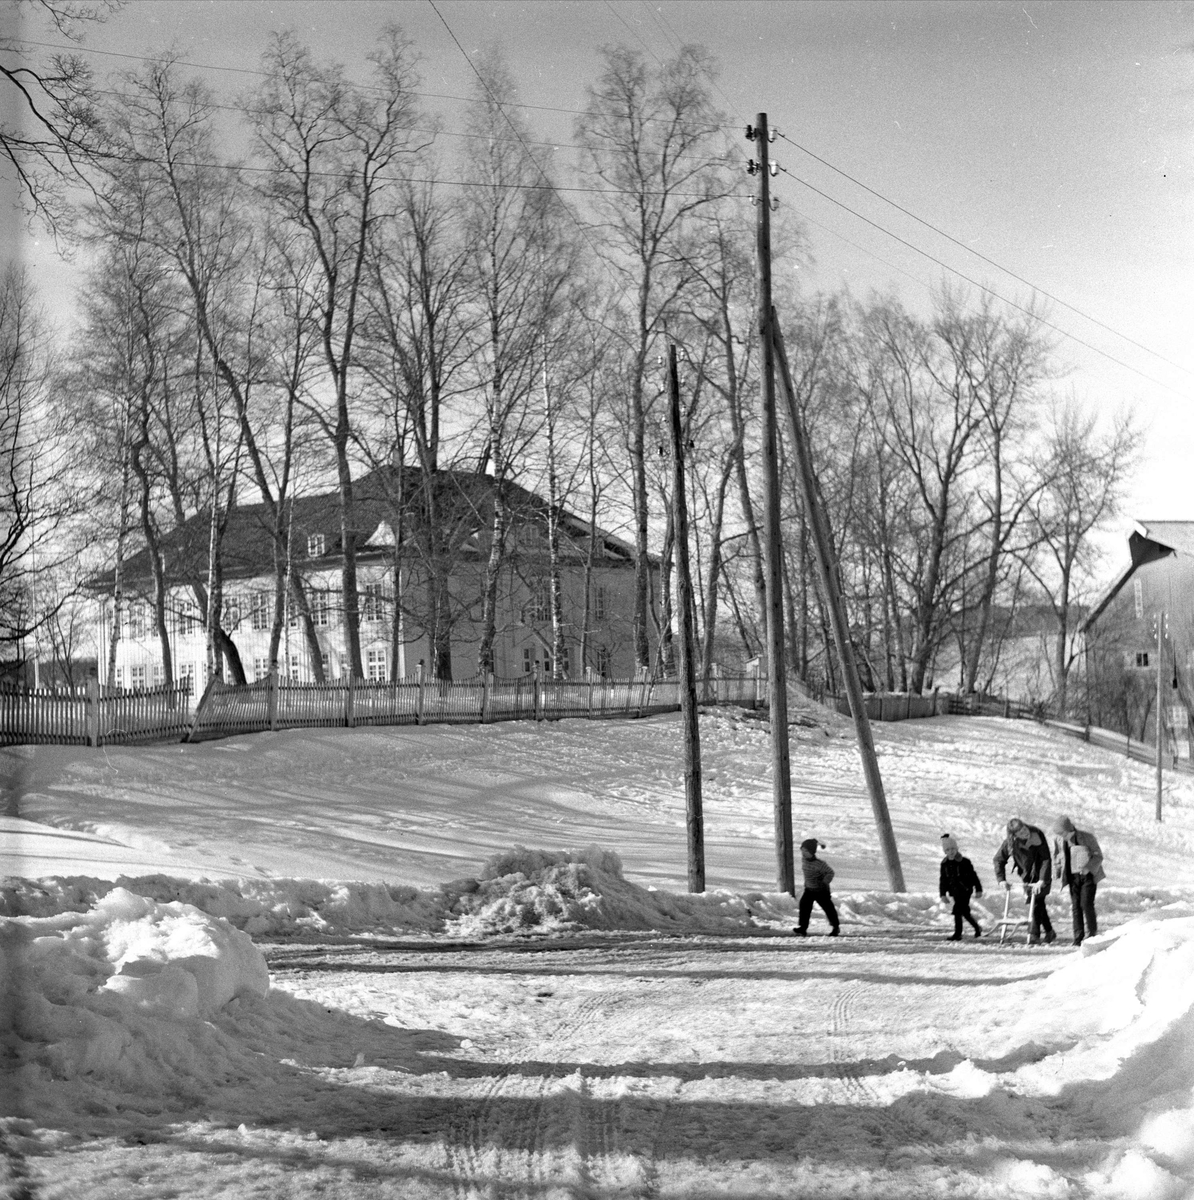 Eidsvollsbygningen, Eidsvoll, 08.04.1958. Vinter.